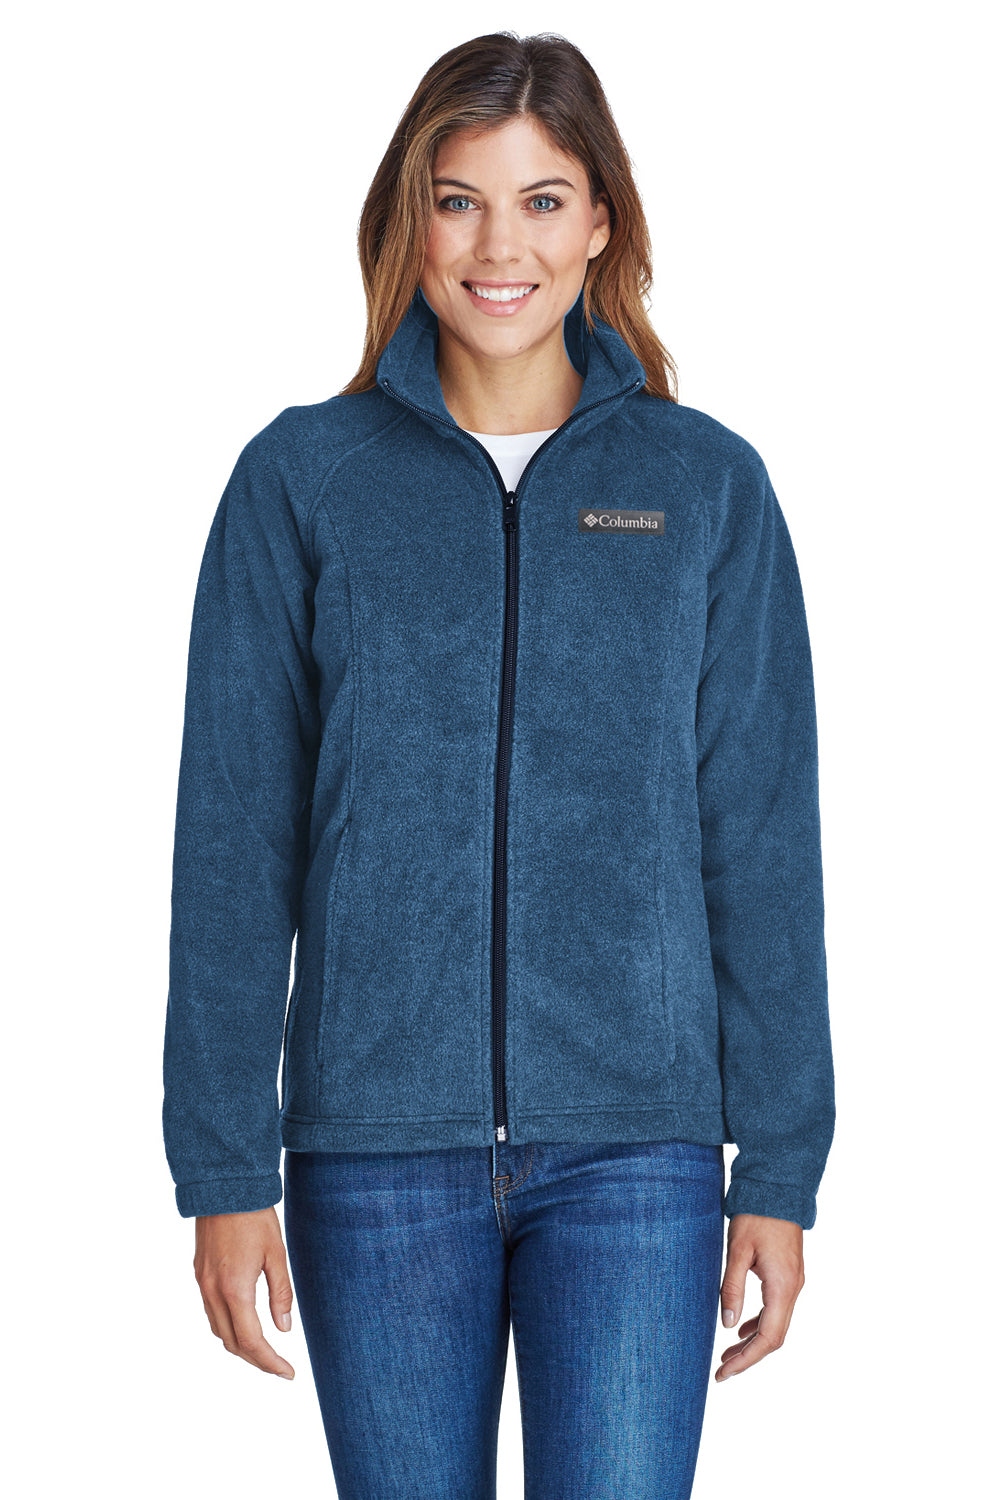 Columbia 6439 Womens Benton Springs Full Zip Fleece Jacket Navy Blue Front